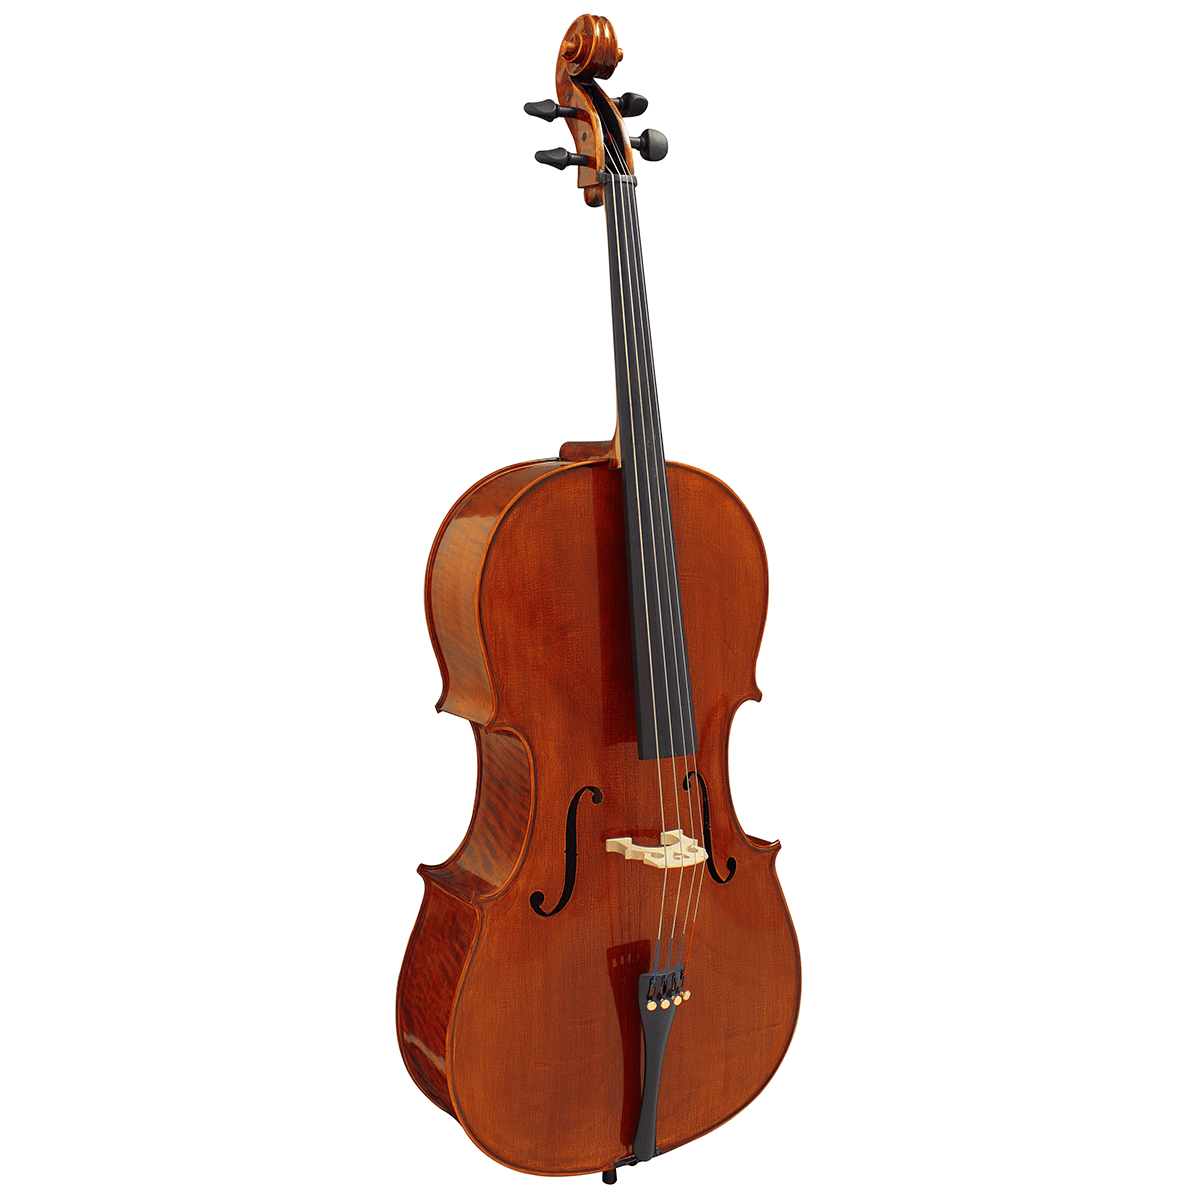 Hidersine Piacenza Cello Outfit 4/4